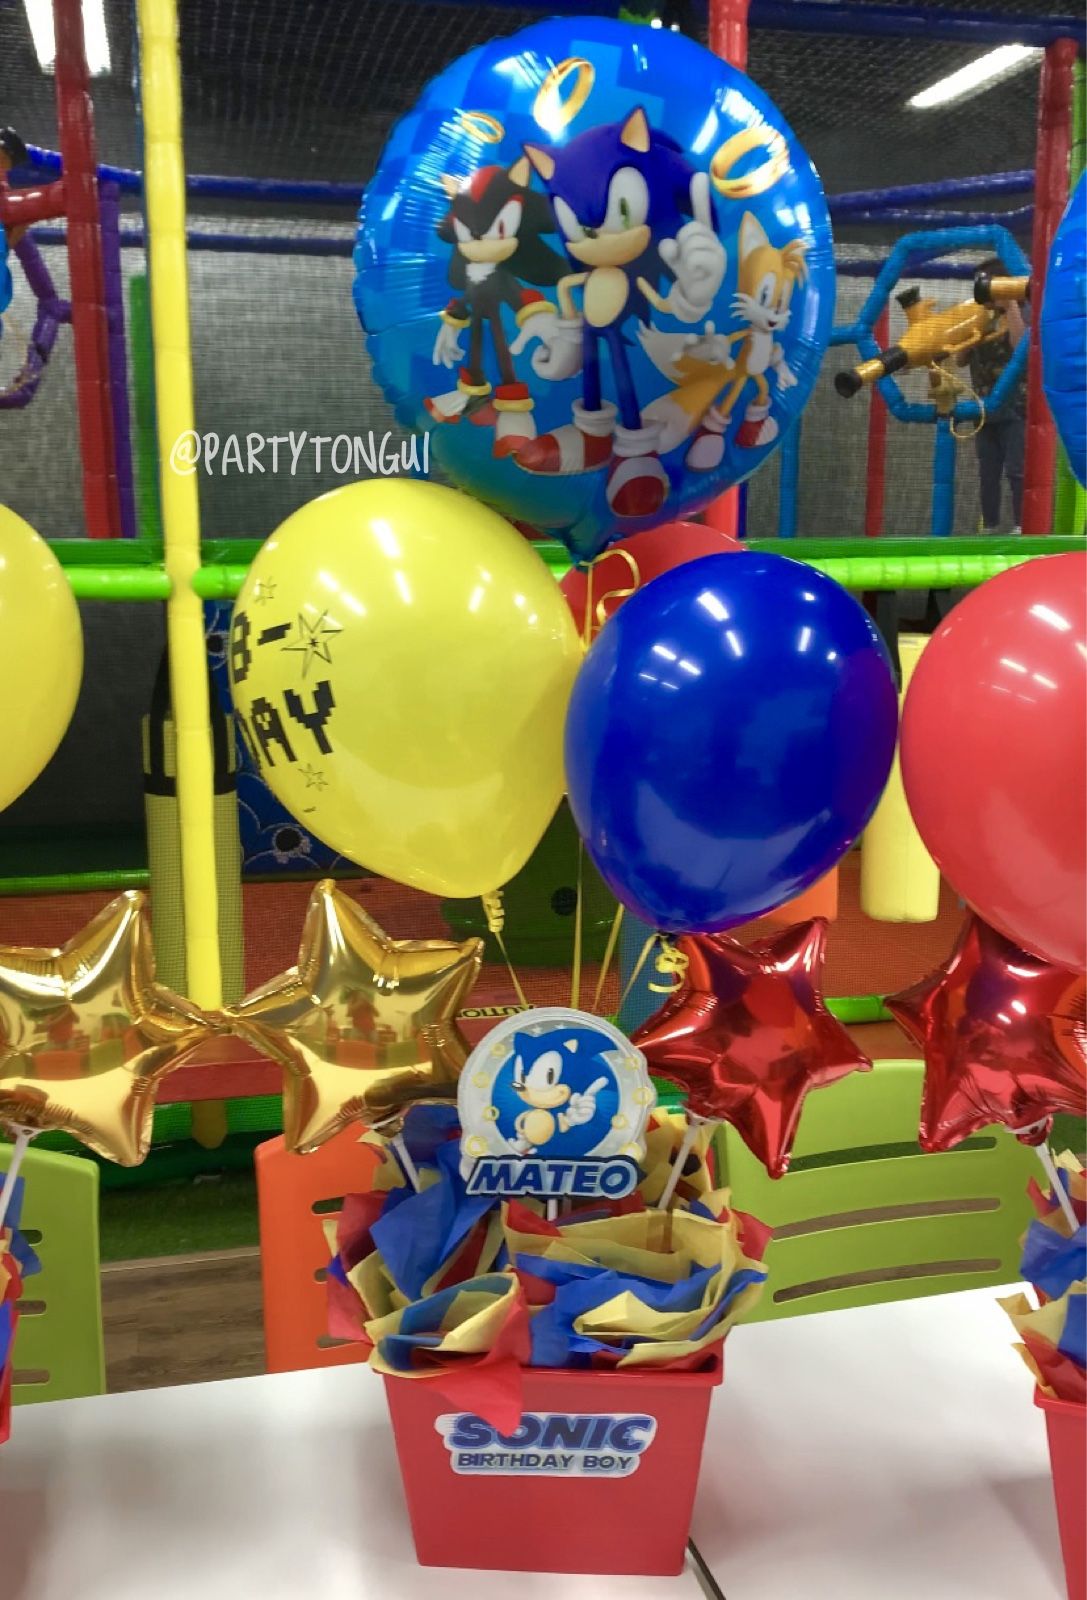 Balloons Centerpieces 🎈 Centros de Mesa en Globos 🎈 Birthday Balloons, Sonic Balloons